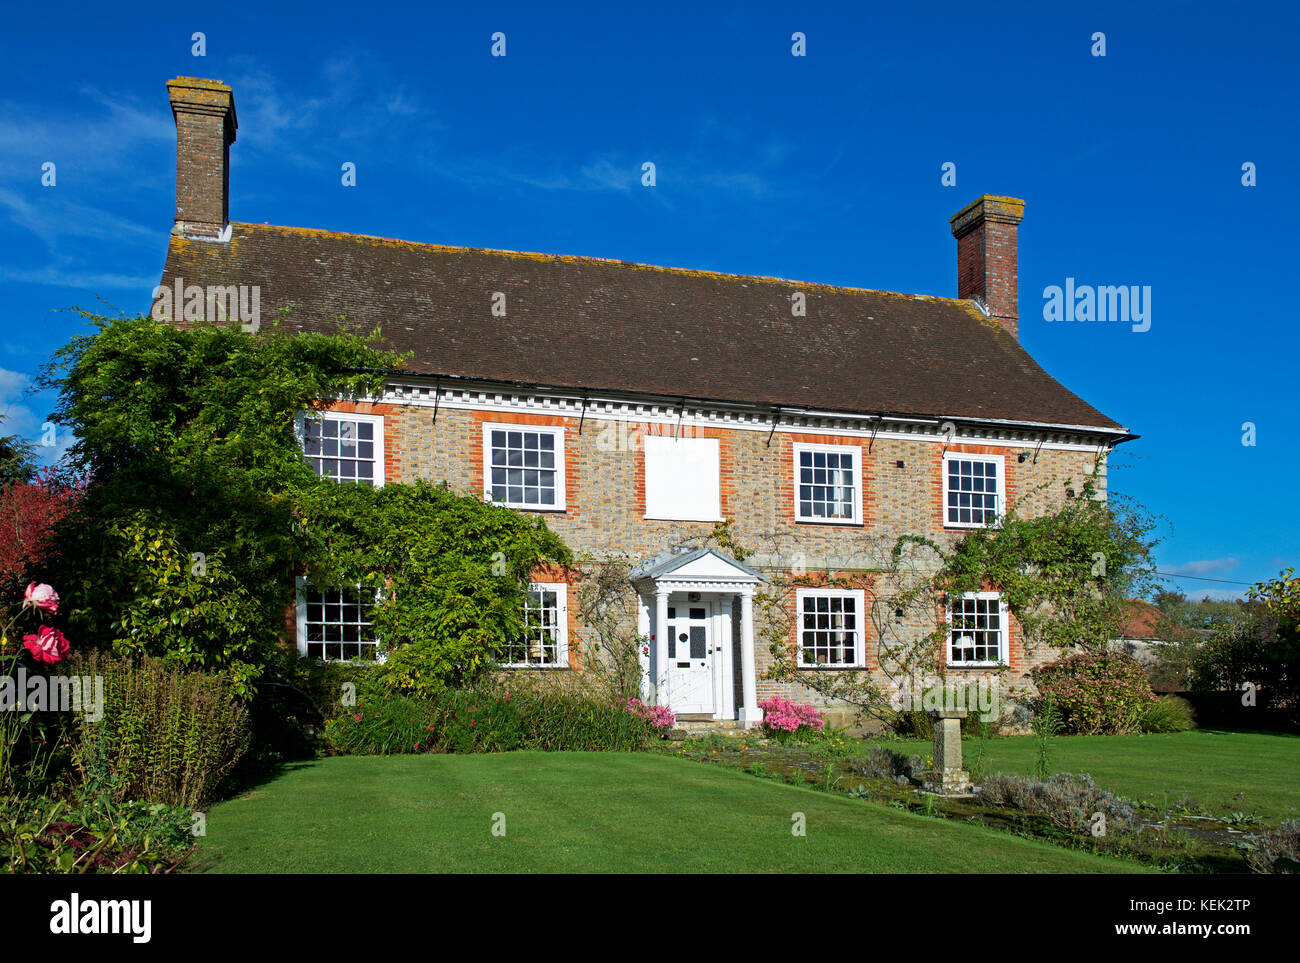 Schönes Haus in der Ortschaft Befiederung, East Sussex, England, Großbritannien Stockfoto